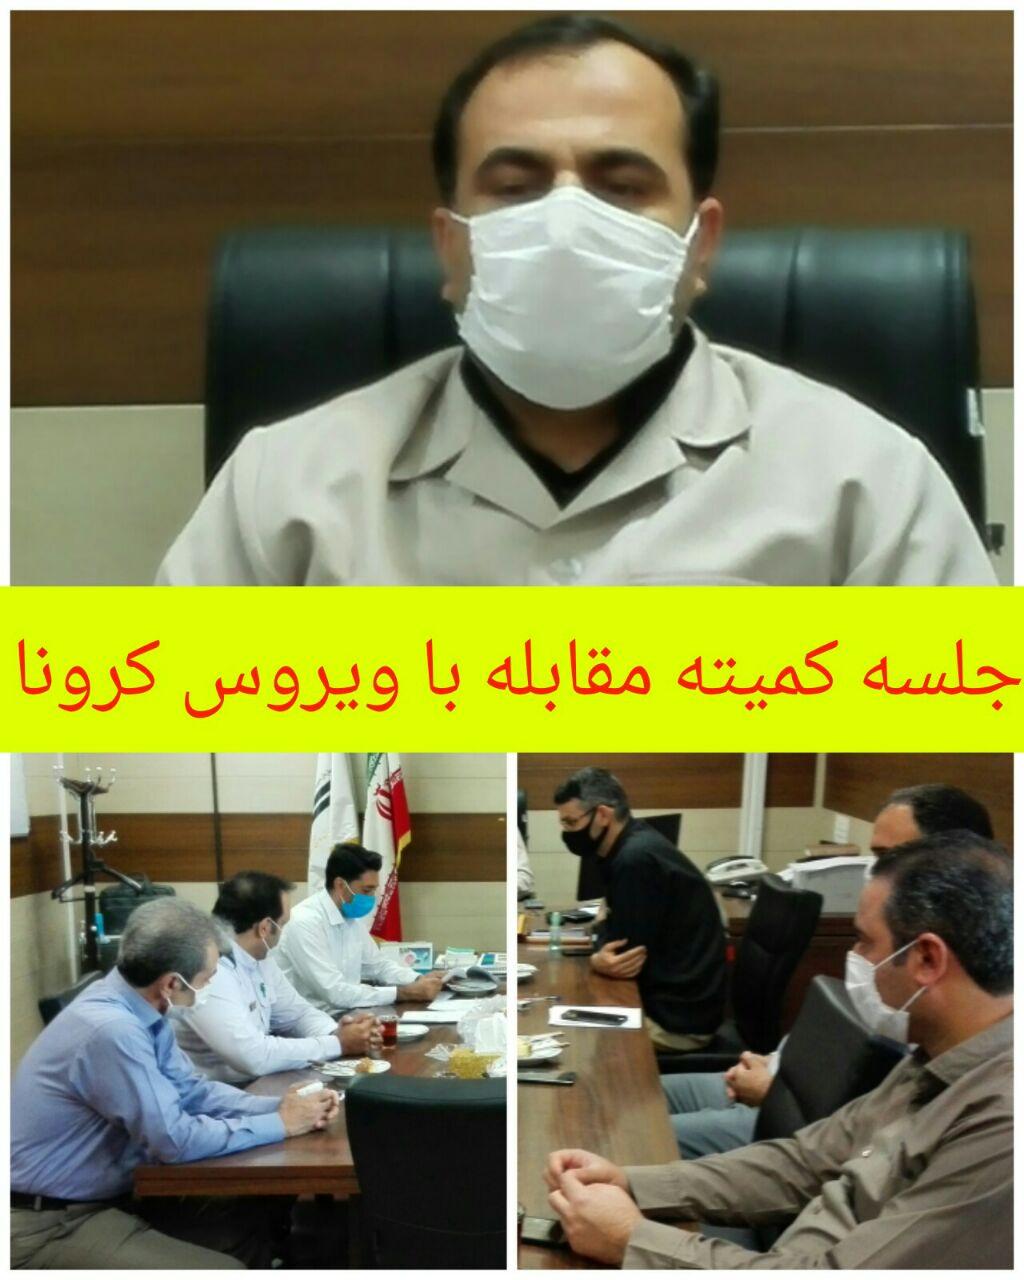 تشدید برخورد با رانندگان تاکسی فاقد ماسک در کرمانشاه/سه روز توقیف خودرو جریمه عدم رعایت پروتکل های بهداشتی!/۲۶درصد از انتقال ویروس کرونا از طریق حمل ونقل عمومی صورت میگیرد